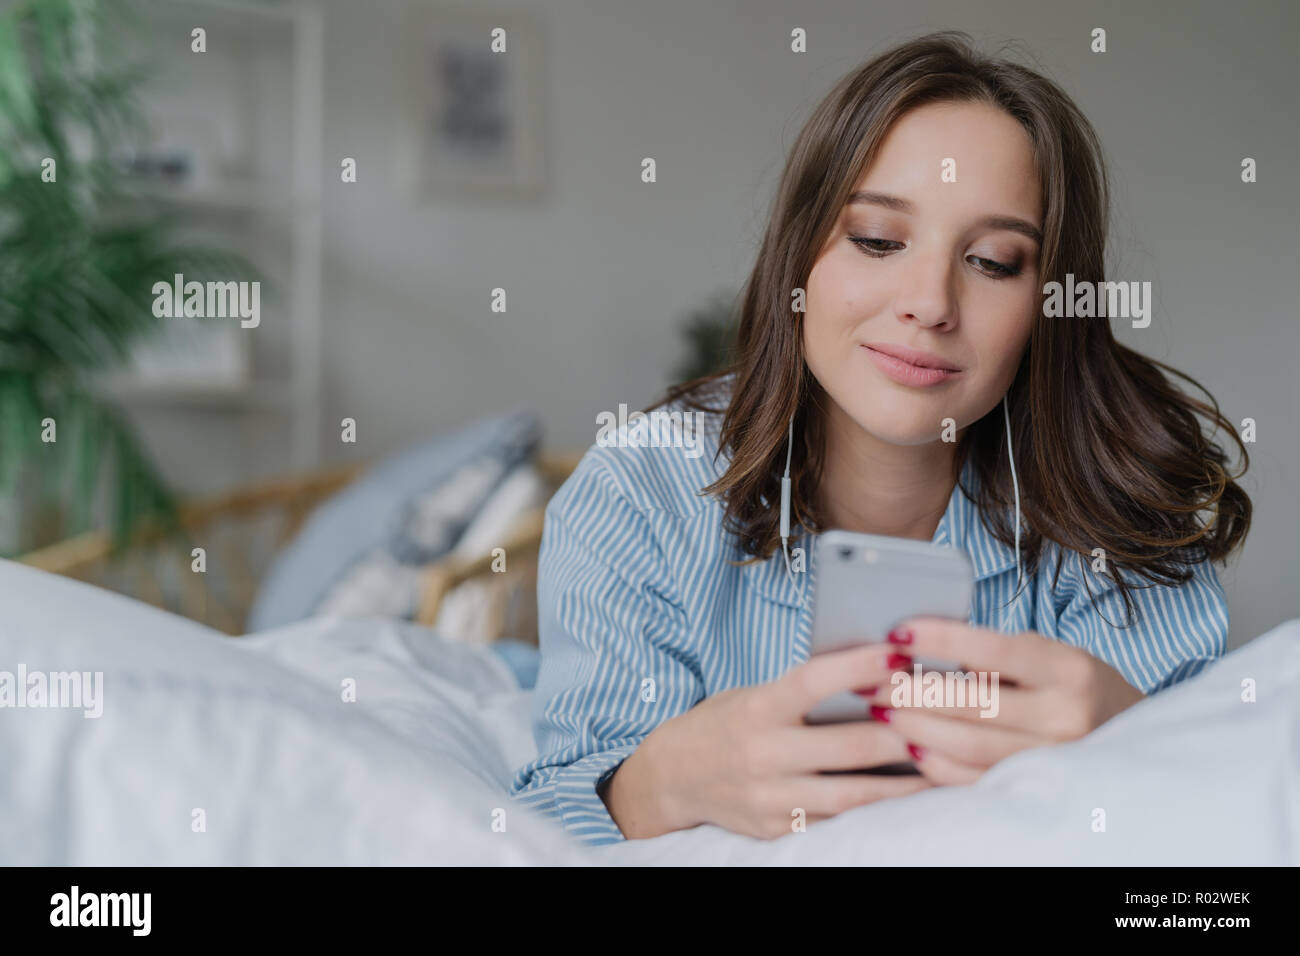 Innen- schuss von attraktiven nachdenkliche junge Frau liegt im Bett, nutzt  moderne Handy, Uhren Video oder Film online, genießt, guter Sound, in pyja  gekleidet Stockfotografie - Alamy